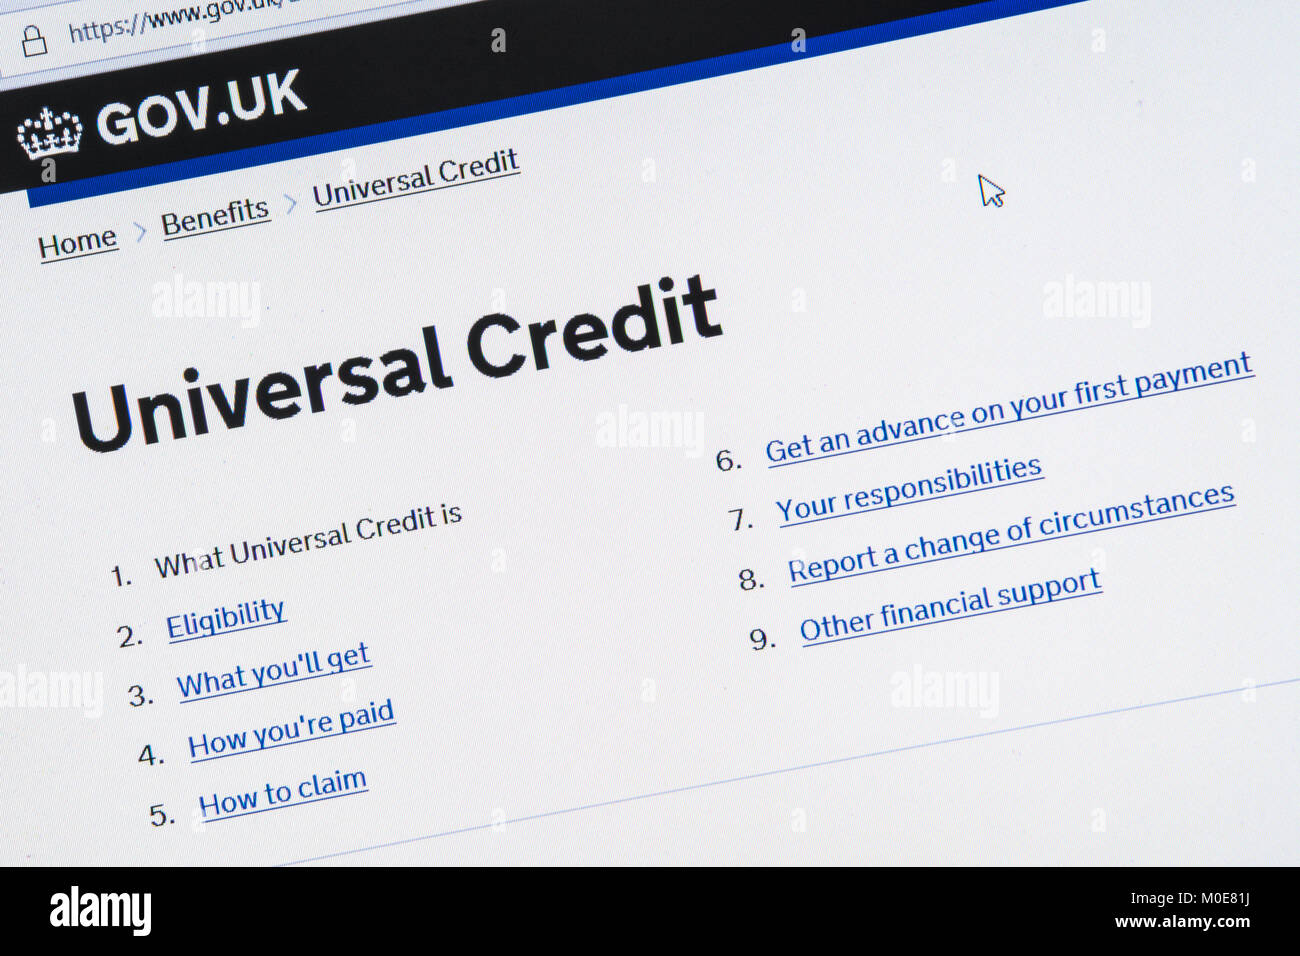 Capture d'écran de l'ordinateur des informations sur le crédit universel sur gov.uk site web en 2018 Banque D'Images